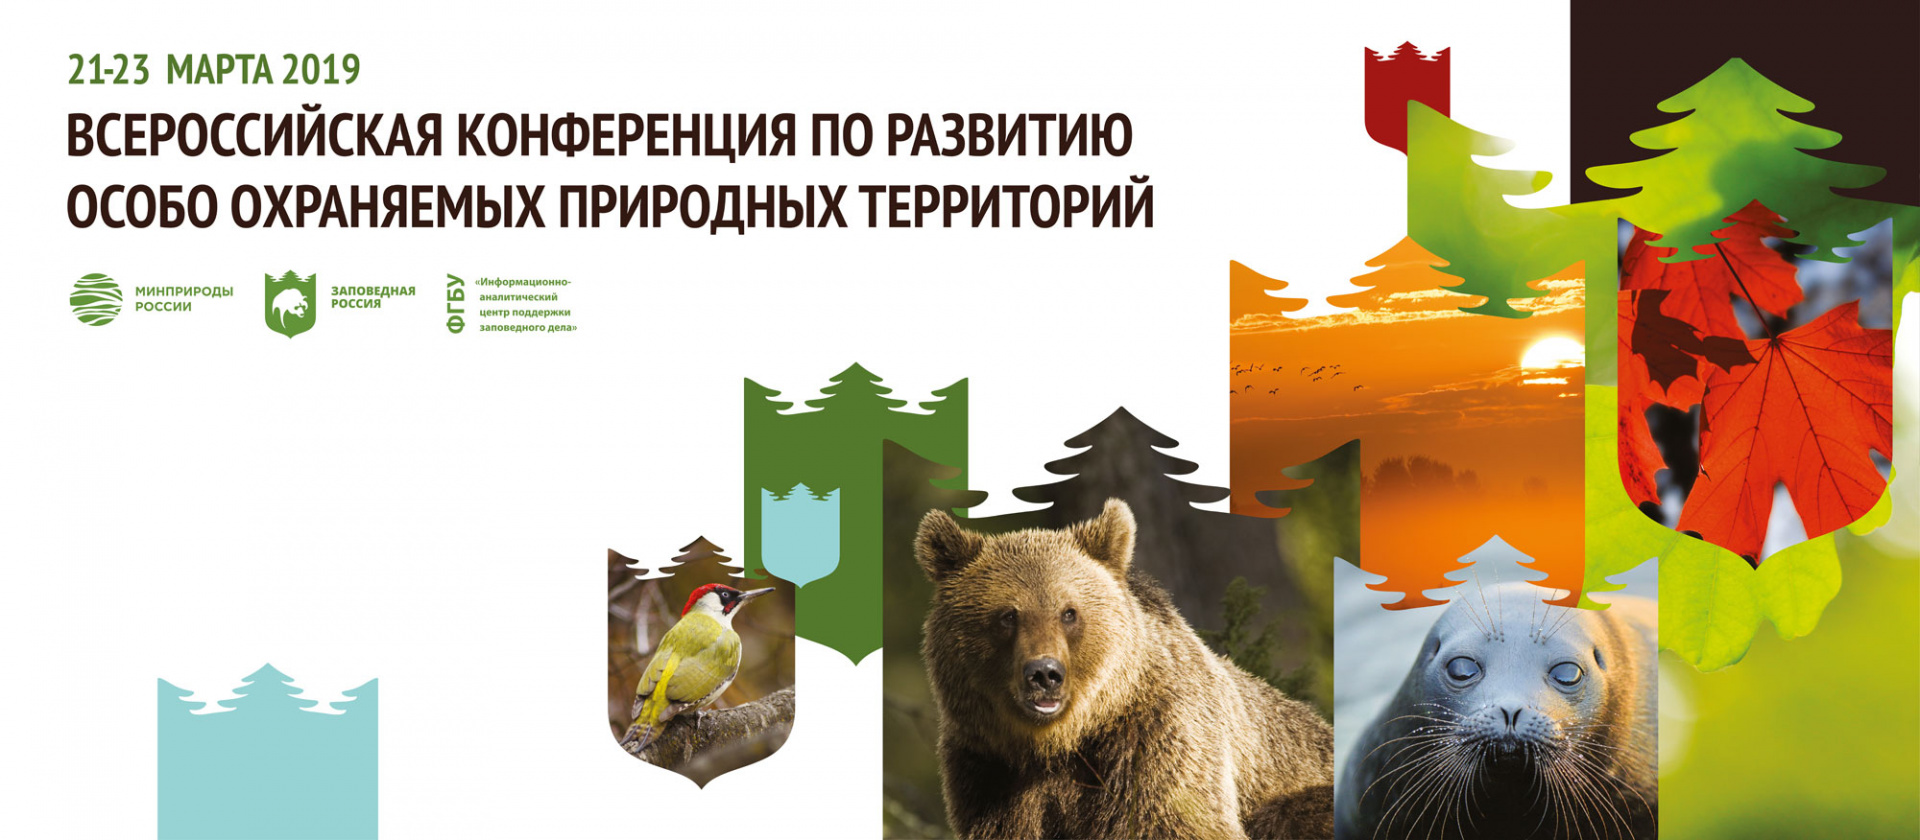 Всероссийская конференция по развитию ООПТ пройдёт в Сочи 21-23 марта 2019 г. - фото 1